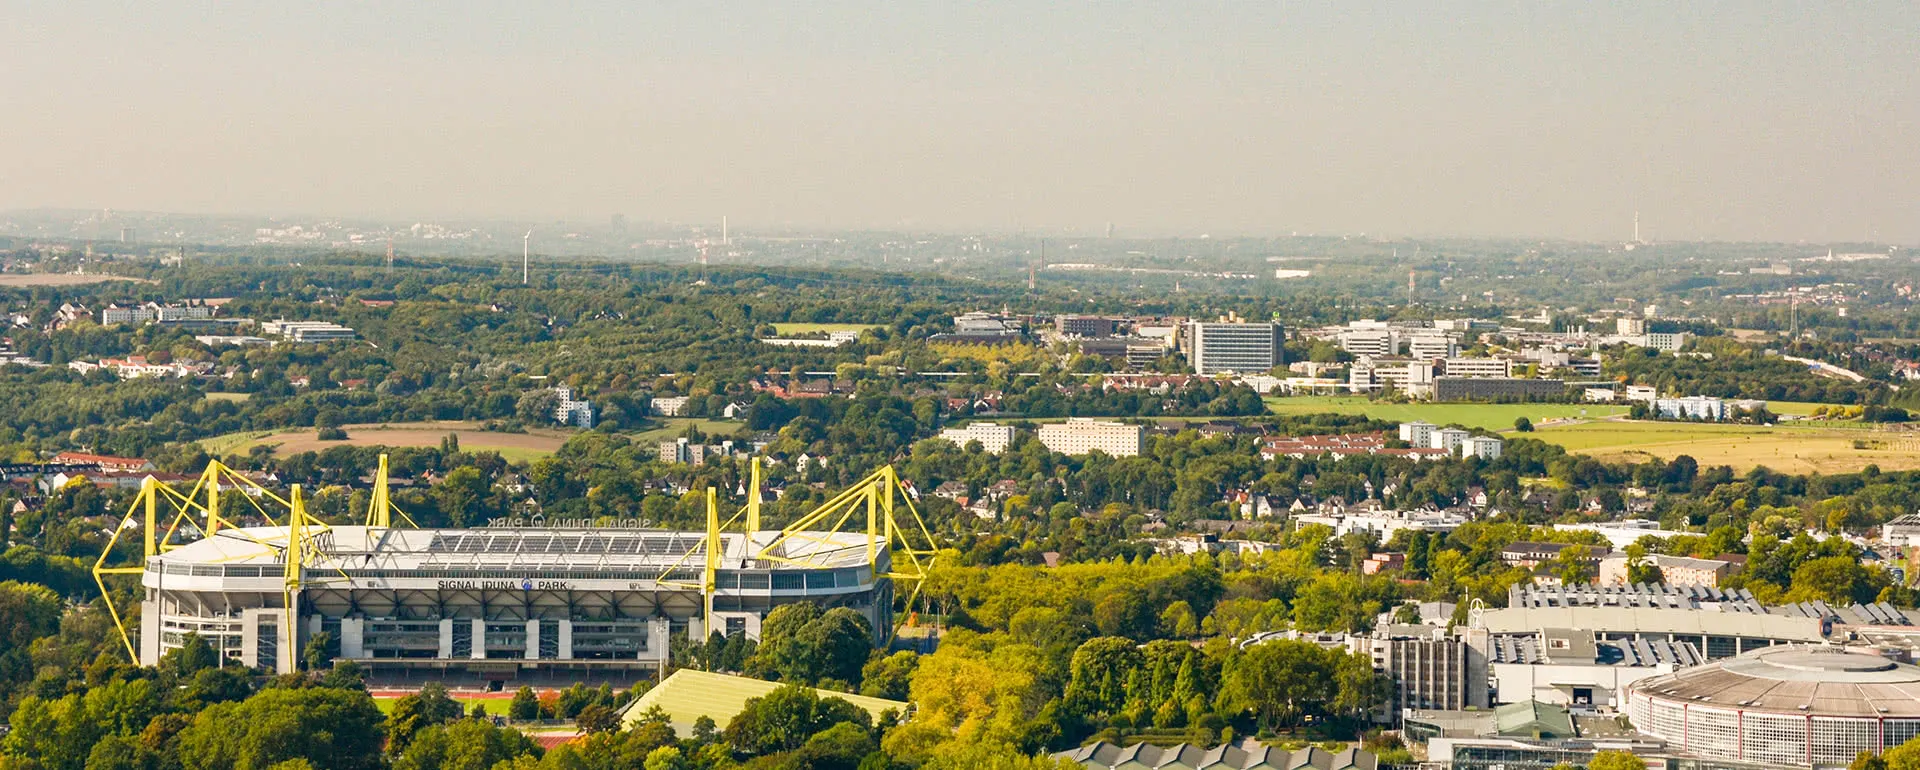 Dortmund panorama image